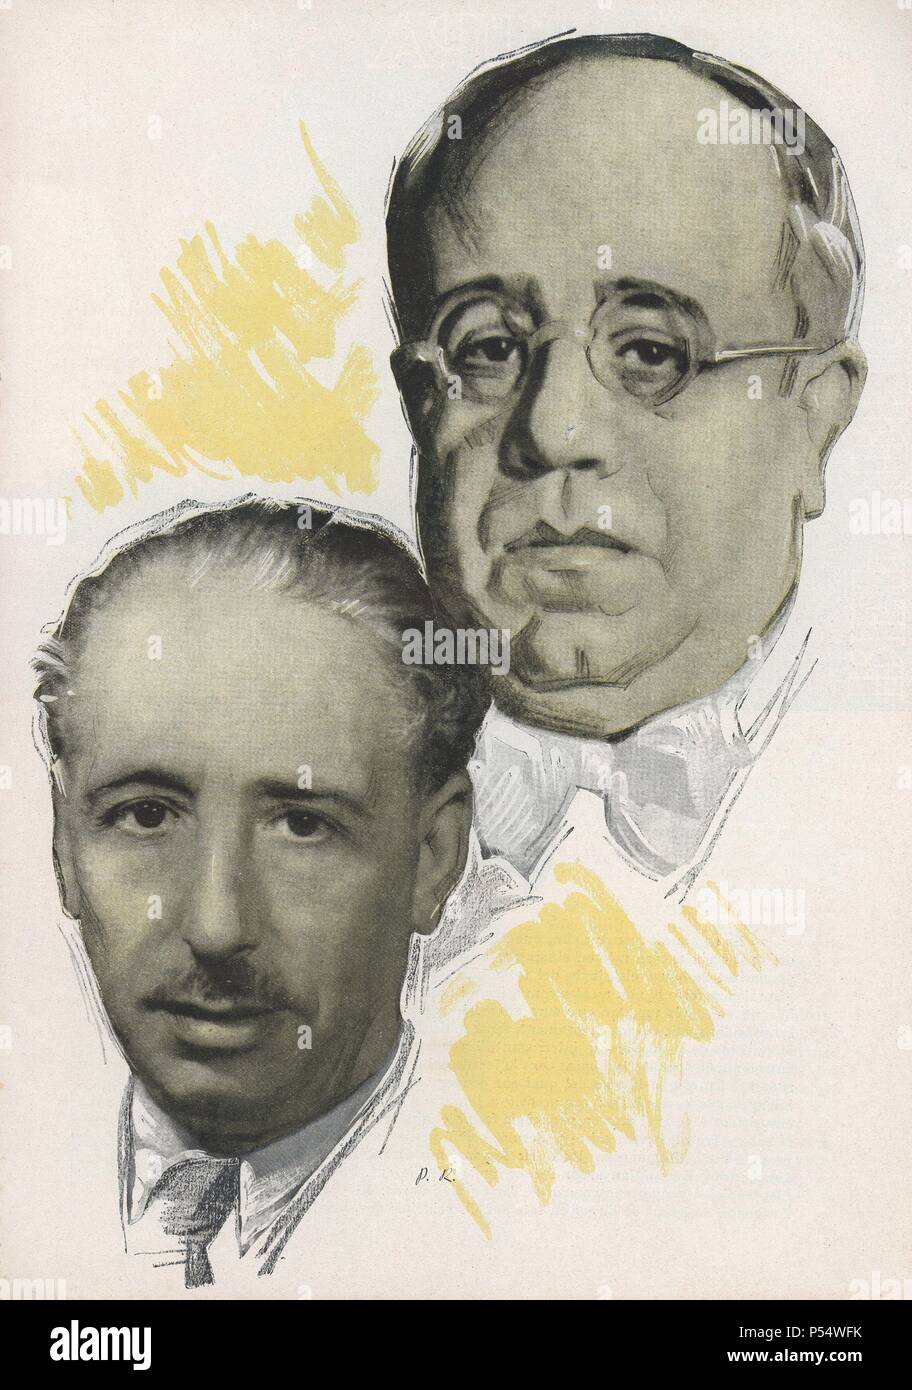 Lluís Companys i Jover (El Tarròs, 1882-Barcelona, 1940), presidente de la Generalitat de Catalunya,  y Manuel Azaña Díaz (Alcalá de Henares, 1880-Montauban, 1940), presidente de la segunda república española. Stock Photo